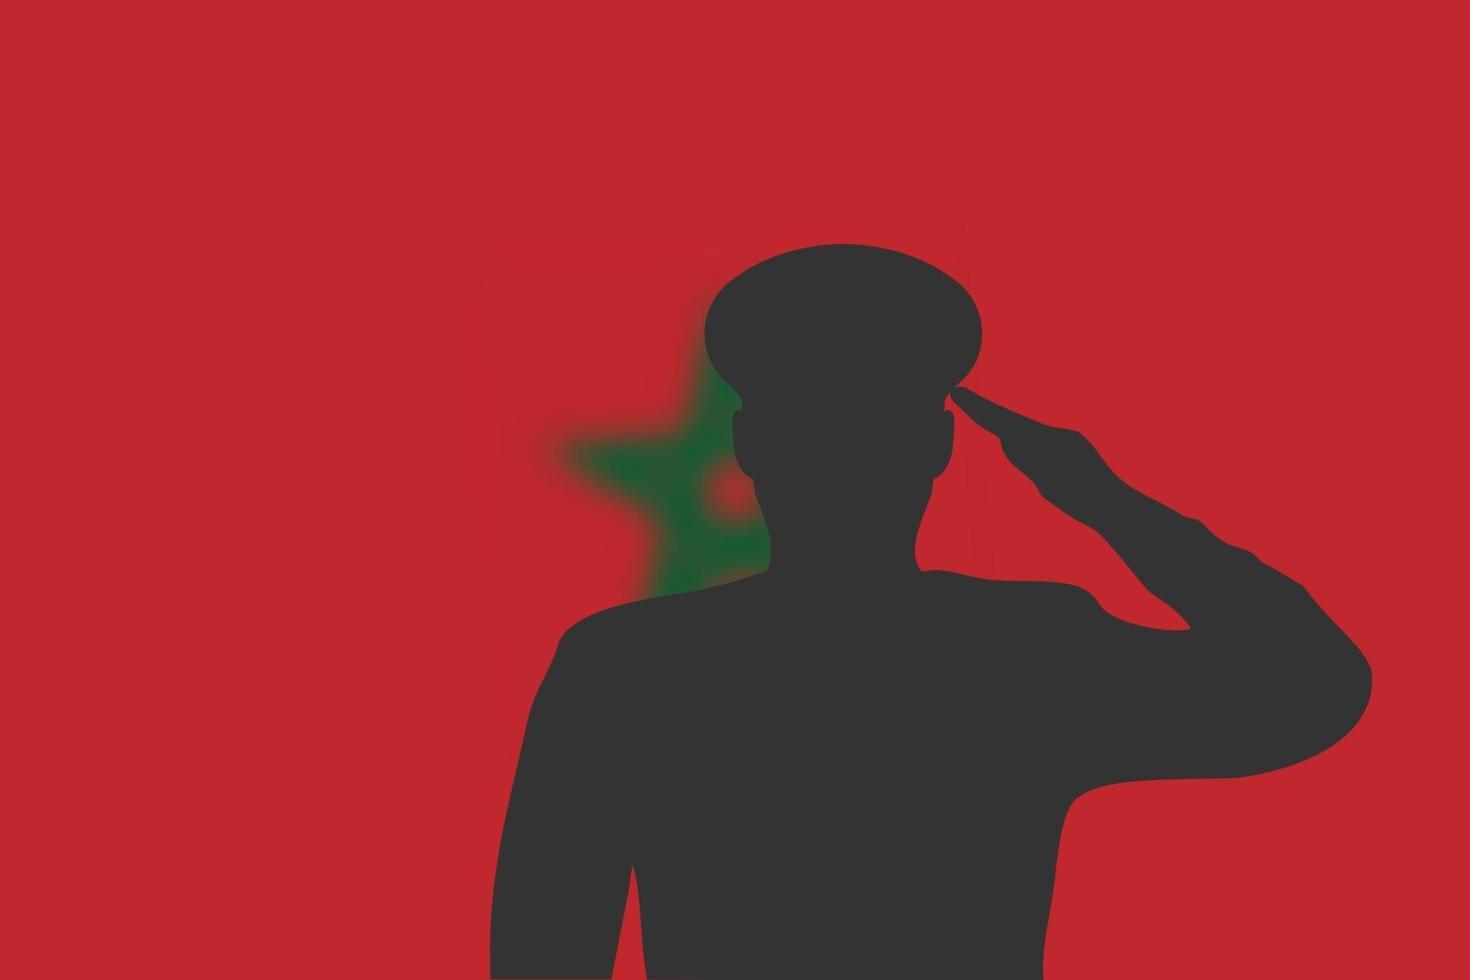 Lötsilhouette auf unscharfem Hintergrund mit Marokko-Flagge. vektor